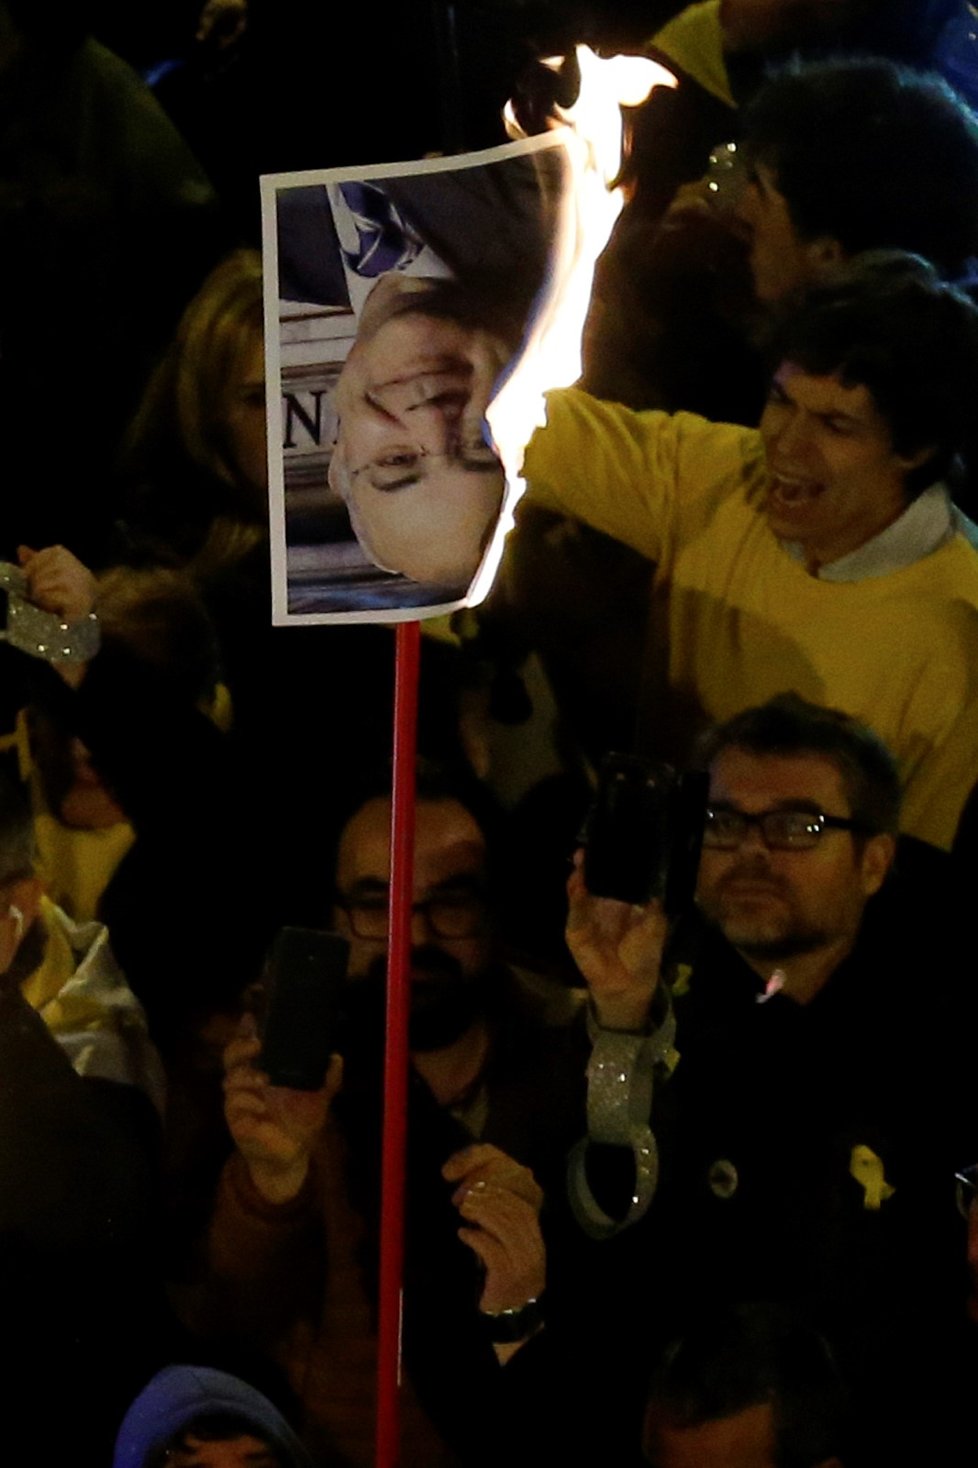 Demonstranti mávali katalánskými vlajkami a skandovali slogany o nezávislosti, někteří dokonce pálili obrazy soudce Nejvyššího soudu a španělského krále Filipa.